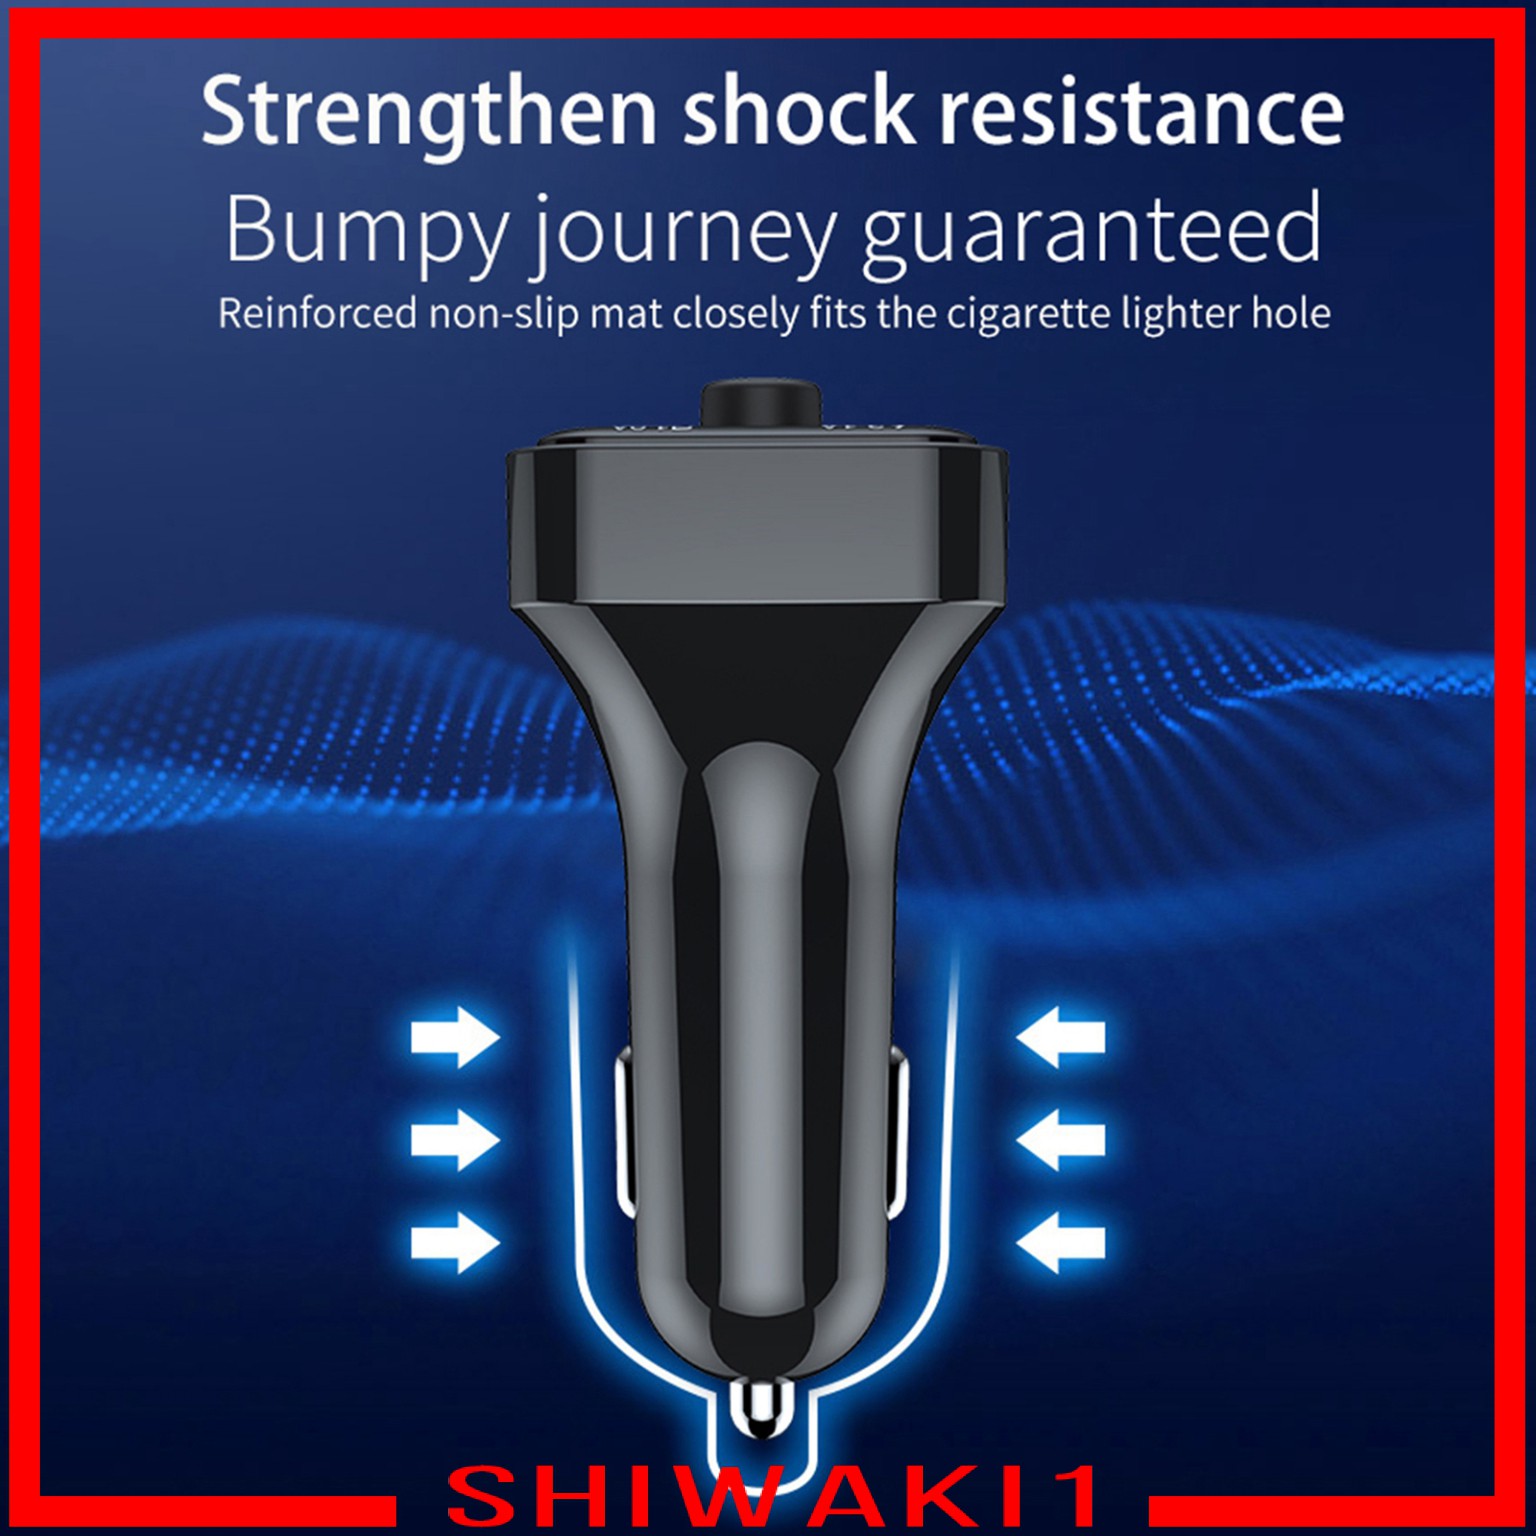 Máy Phát Tín Hiệu Bluetooth V5.0 Shiwaki1 Chuyên Dụng Cho Xe Hơi